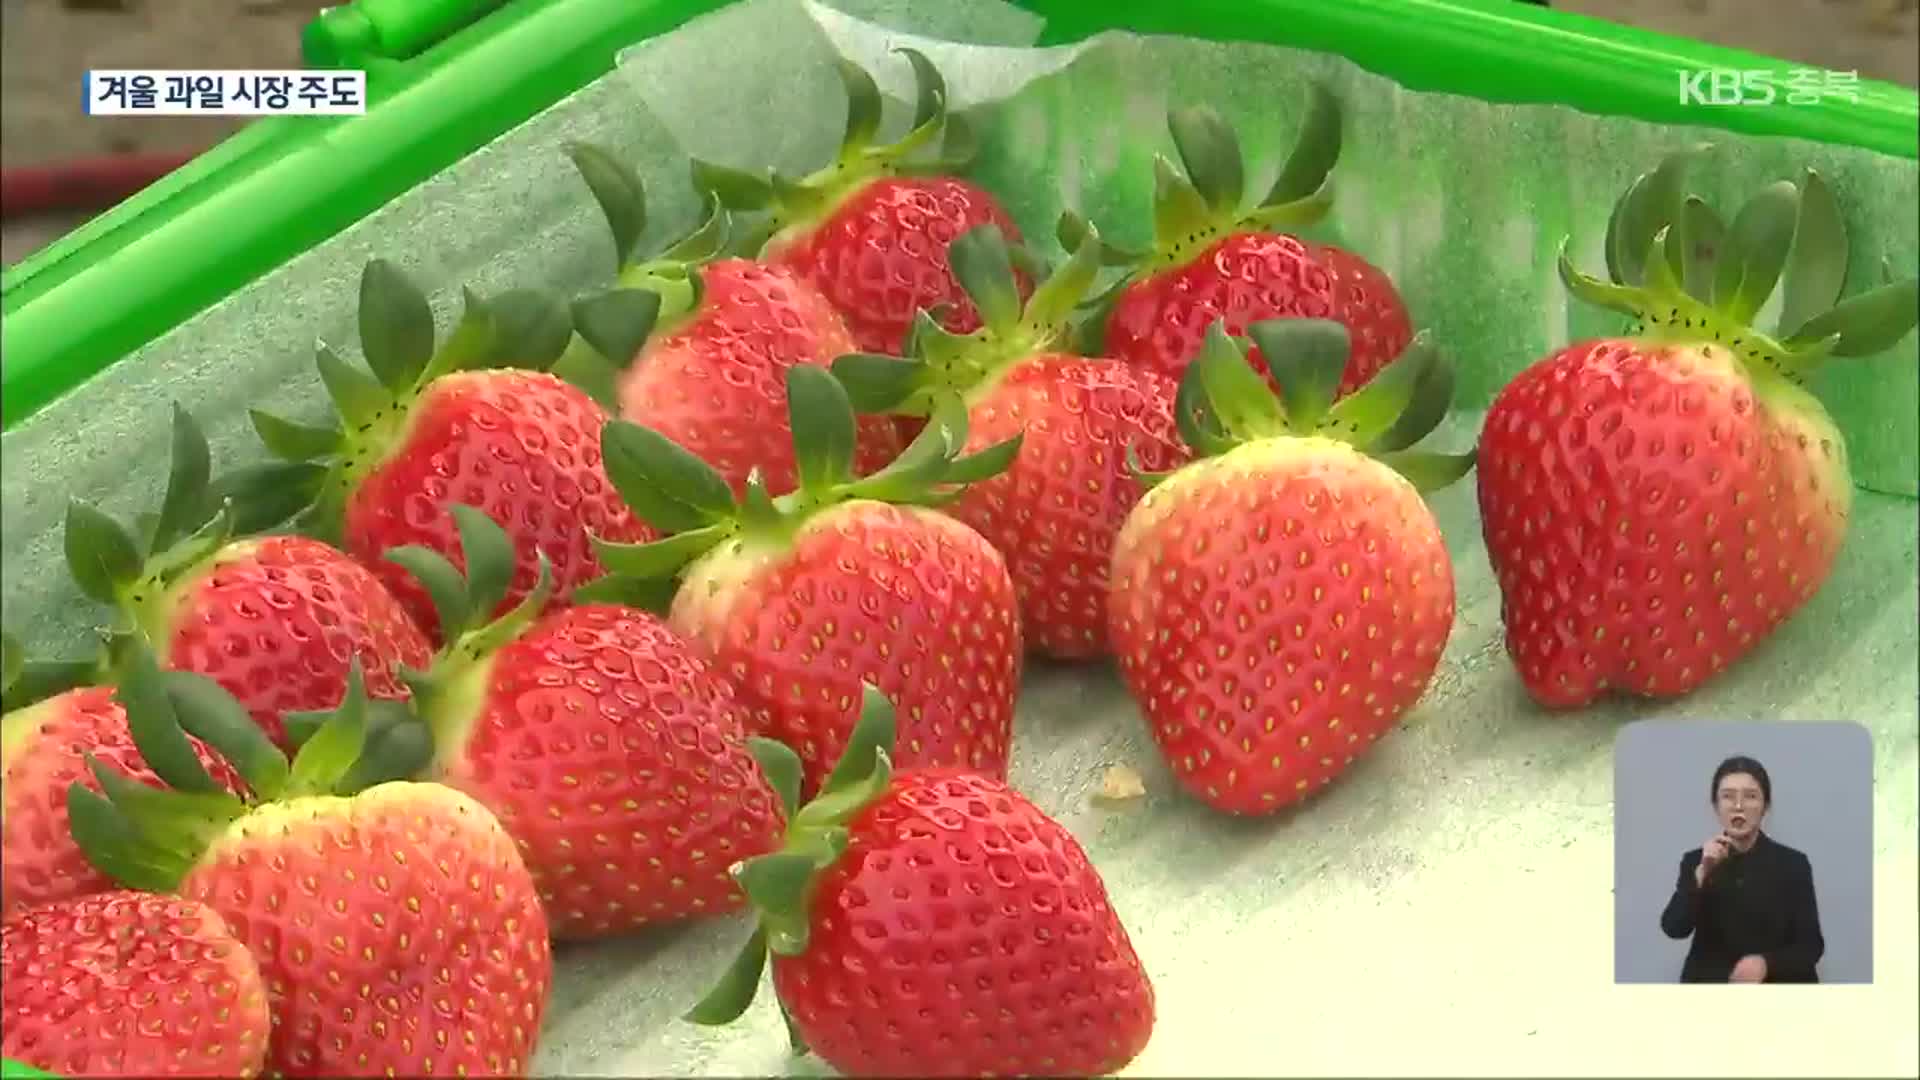 한겨울 딸기 수확 한창…촉성 재배 영향